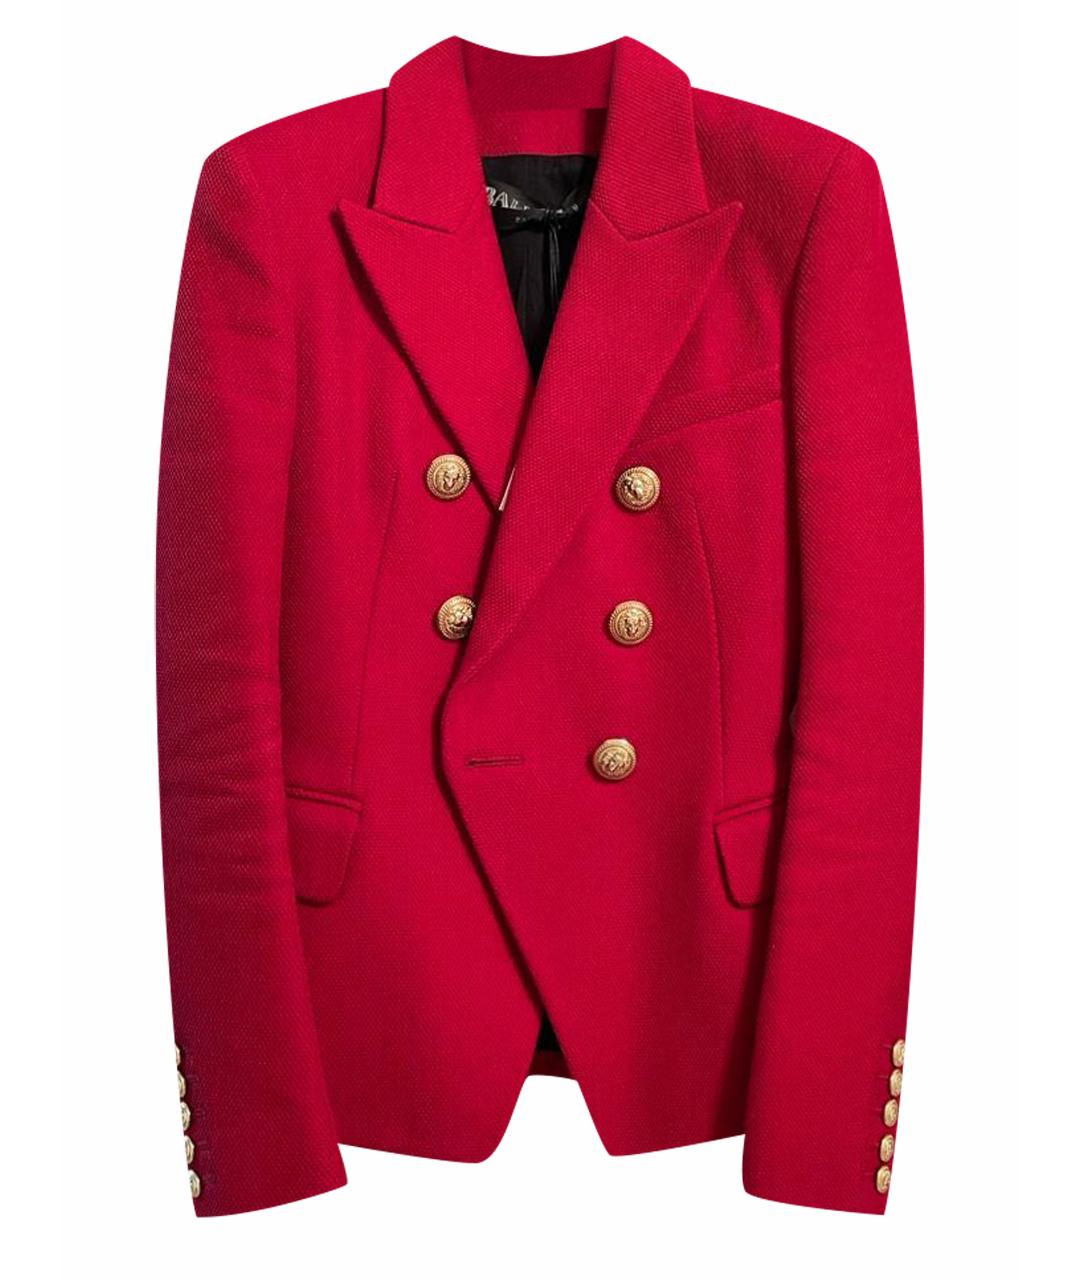 BALMAIN Красный жакет/пиджак, фото 1